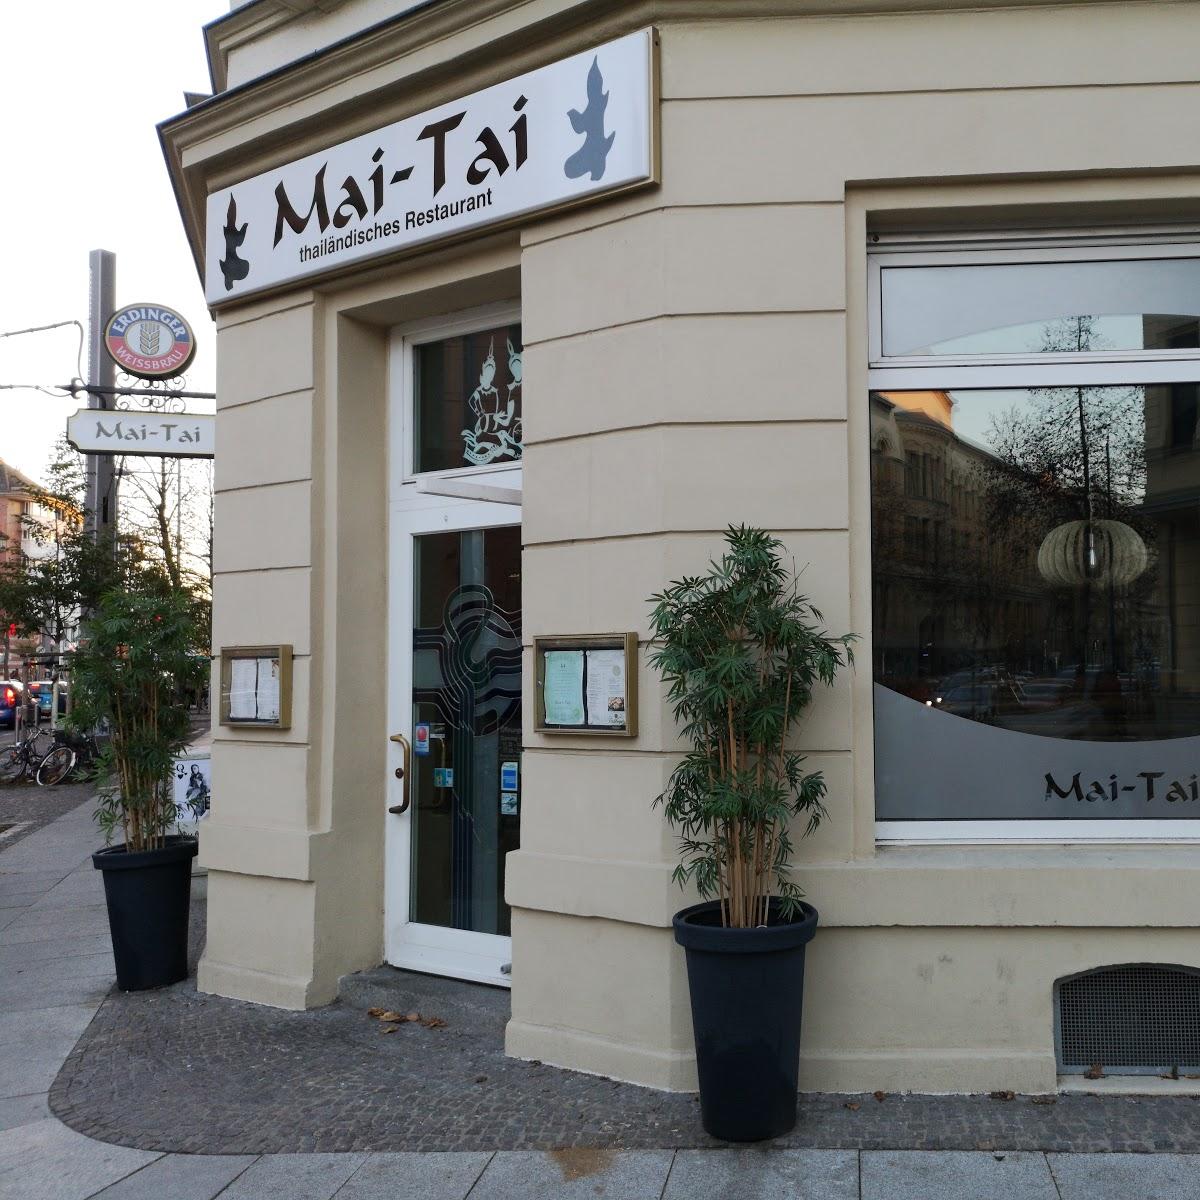 Restaurant "Mai-Tai" in Leipzig